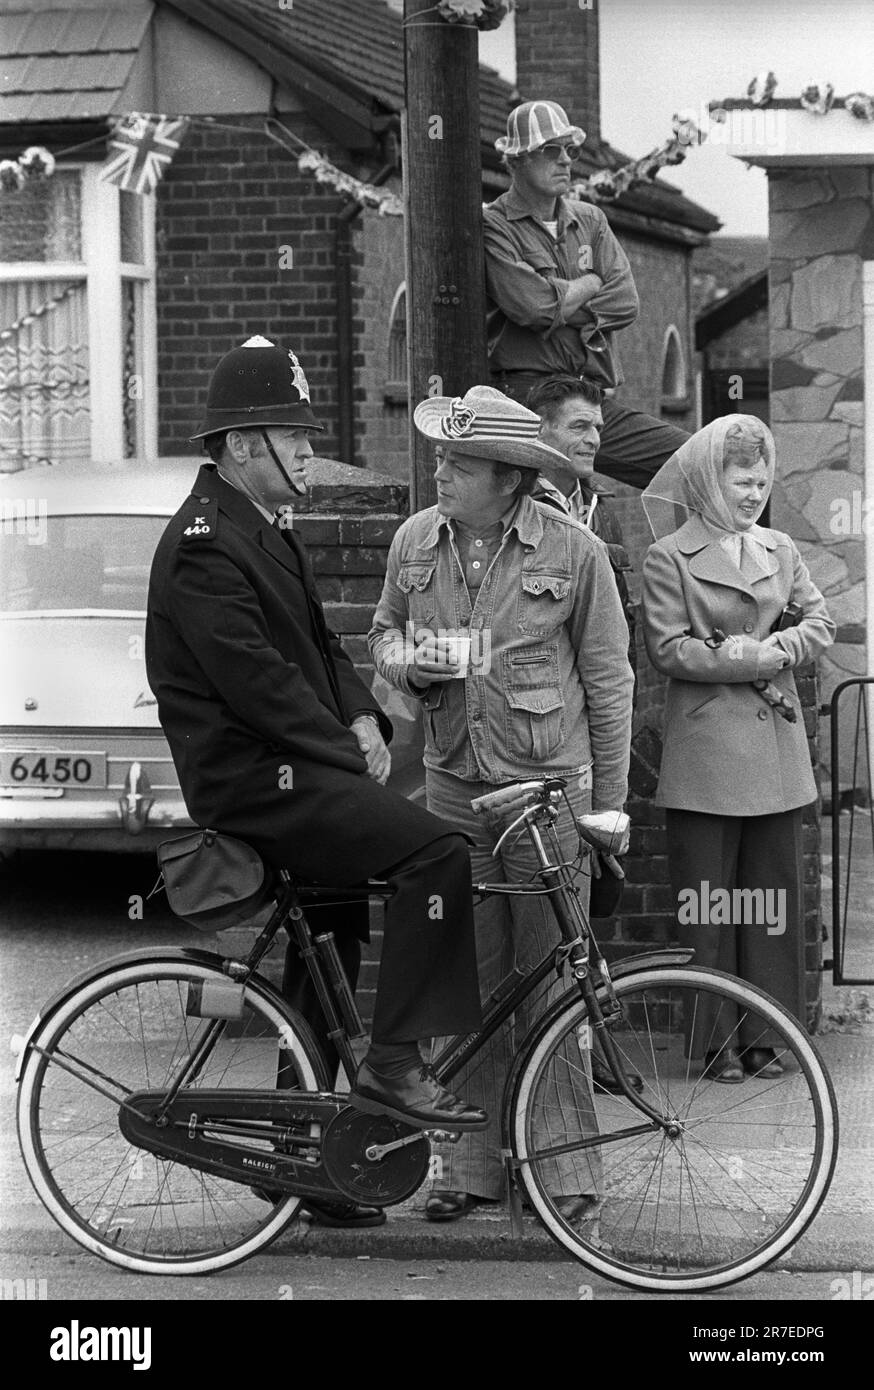 Reine Elizabeth II célébration du Jubilé d'argent 1977. Spring Bank Holiday Monday les résidents Betterton Road tiennent une fête célébrant la rue du Jubilé d'argent.Une petite foule se réunit pour regarder la parade avec un policier local sur son vélo. Rainham, Essex, Angleterre 6th juin 1977. Banque D'Images